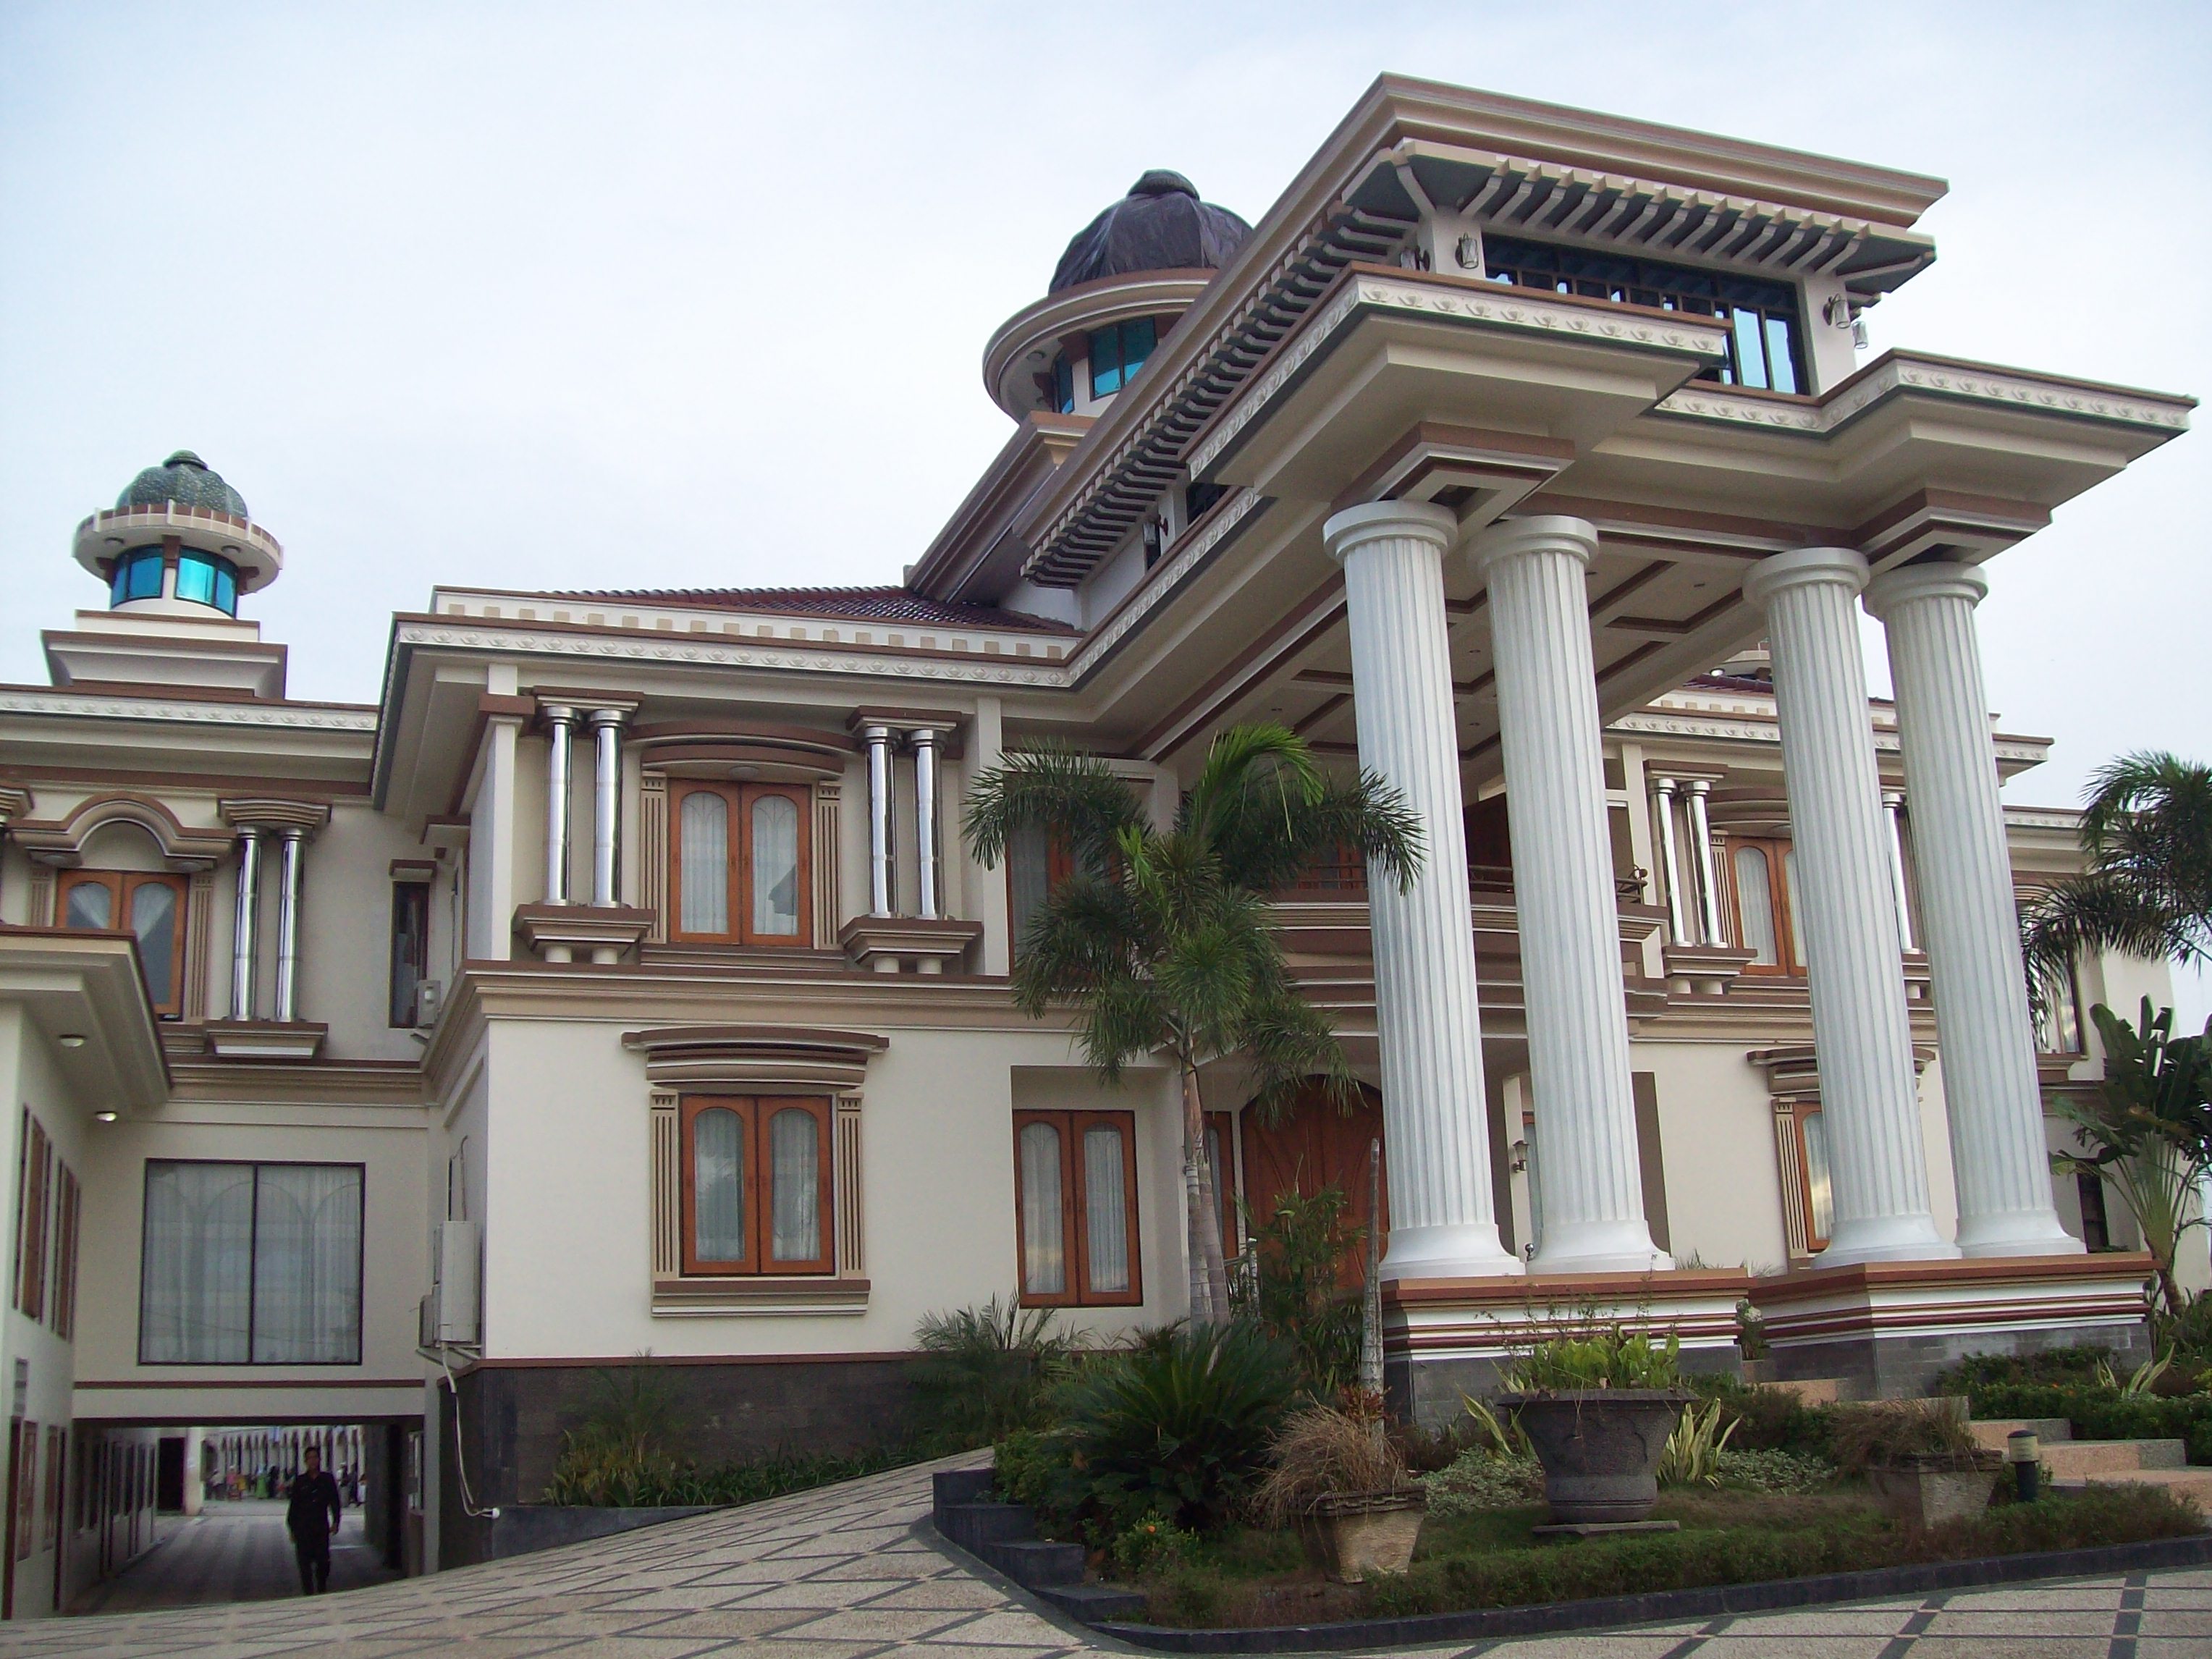  Rumah  Mewah Istana  Republika RSS